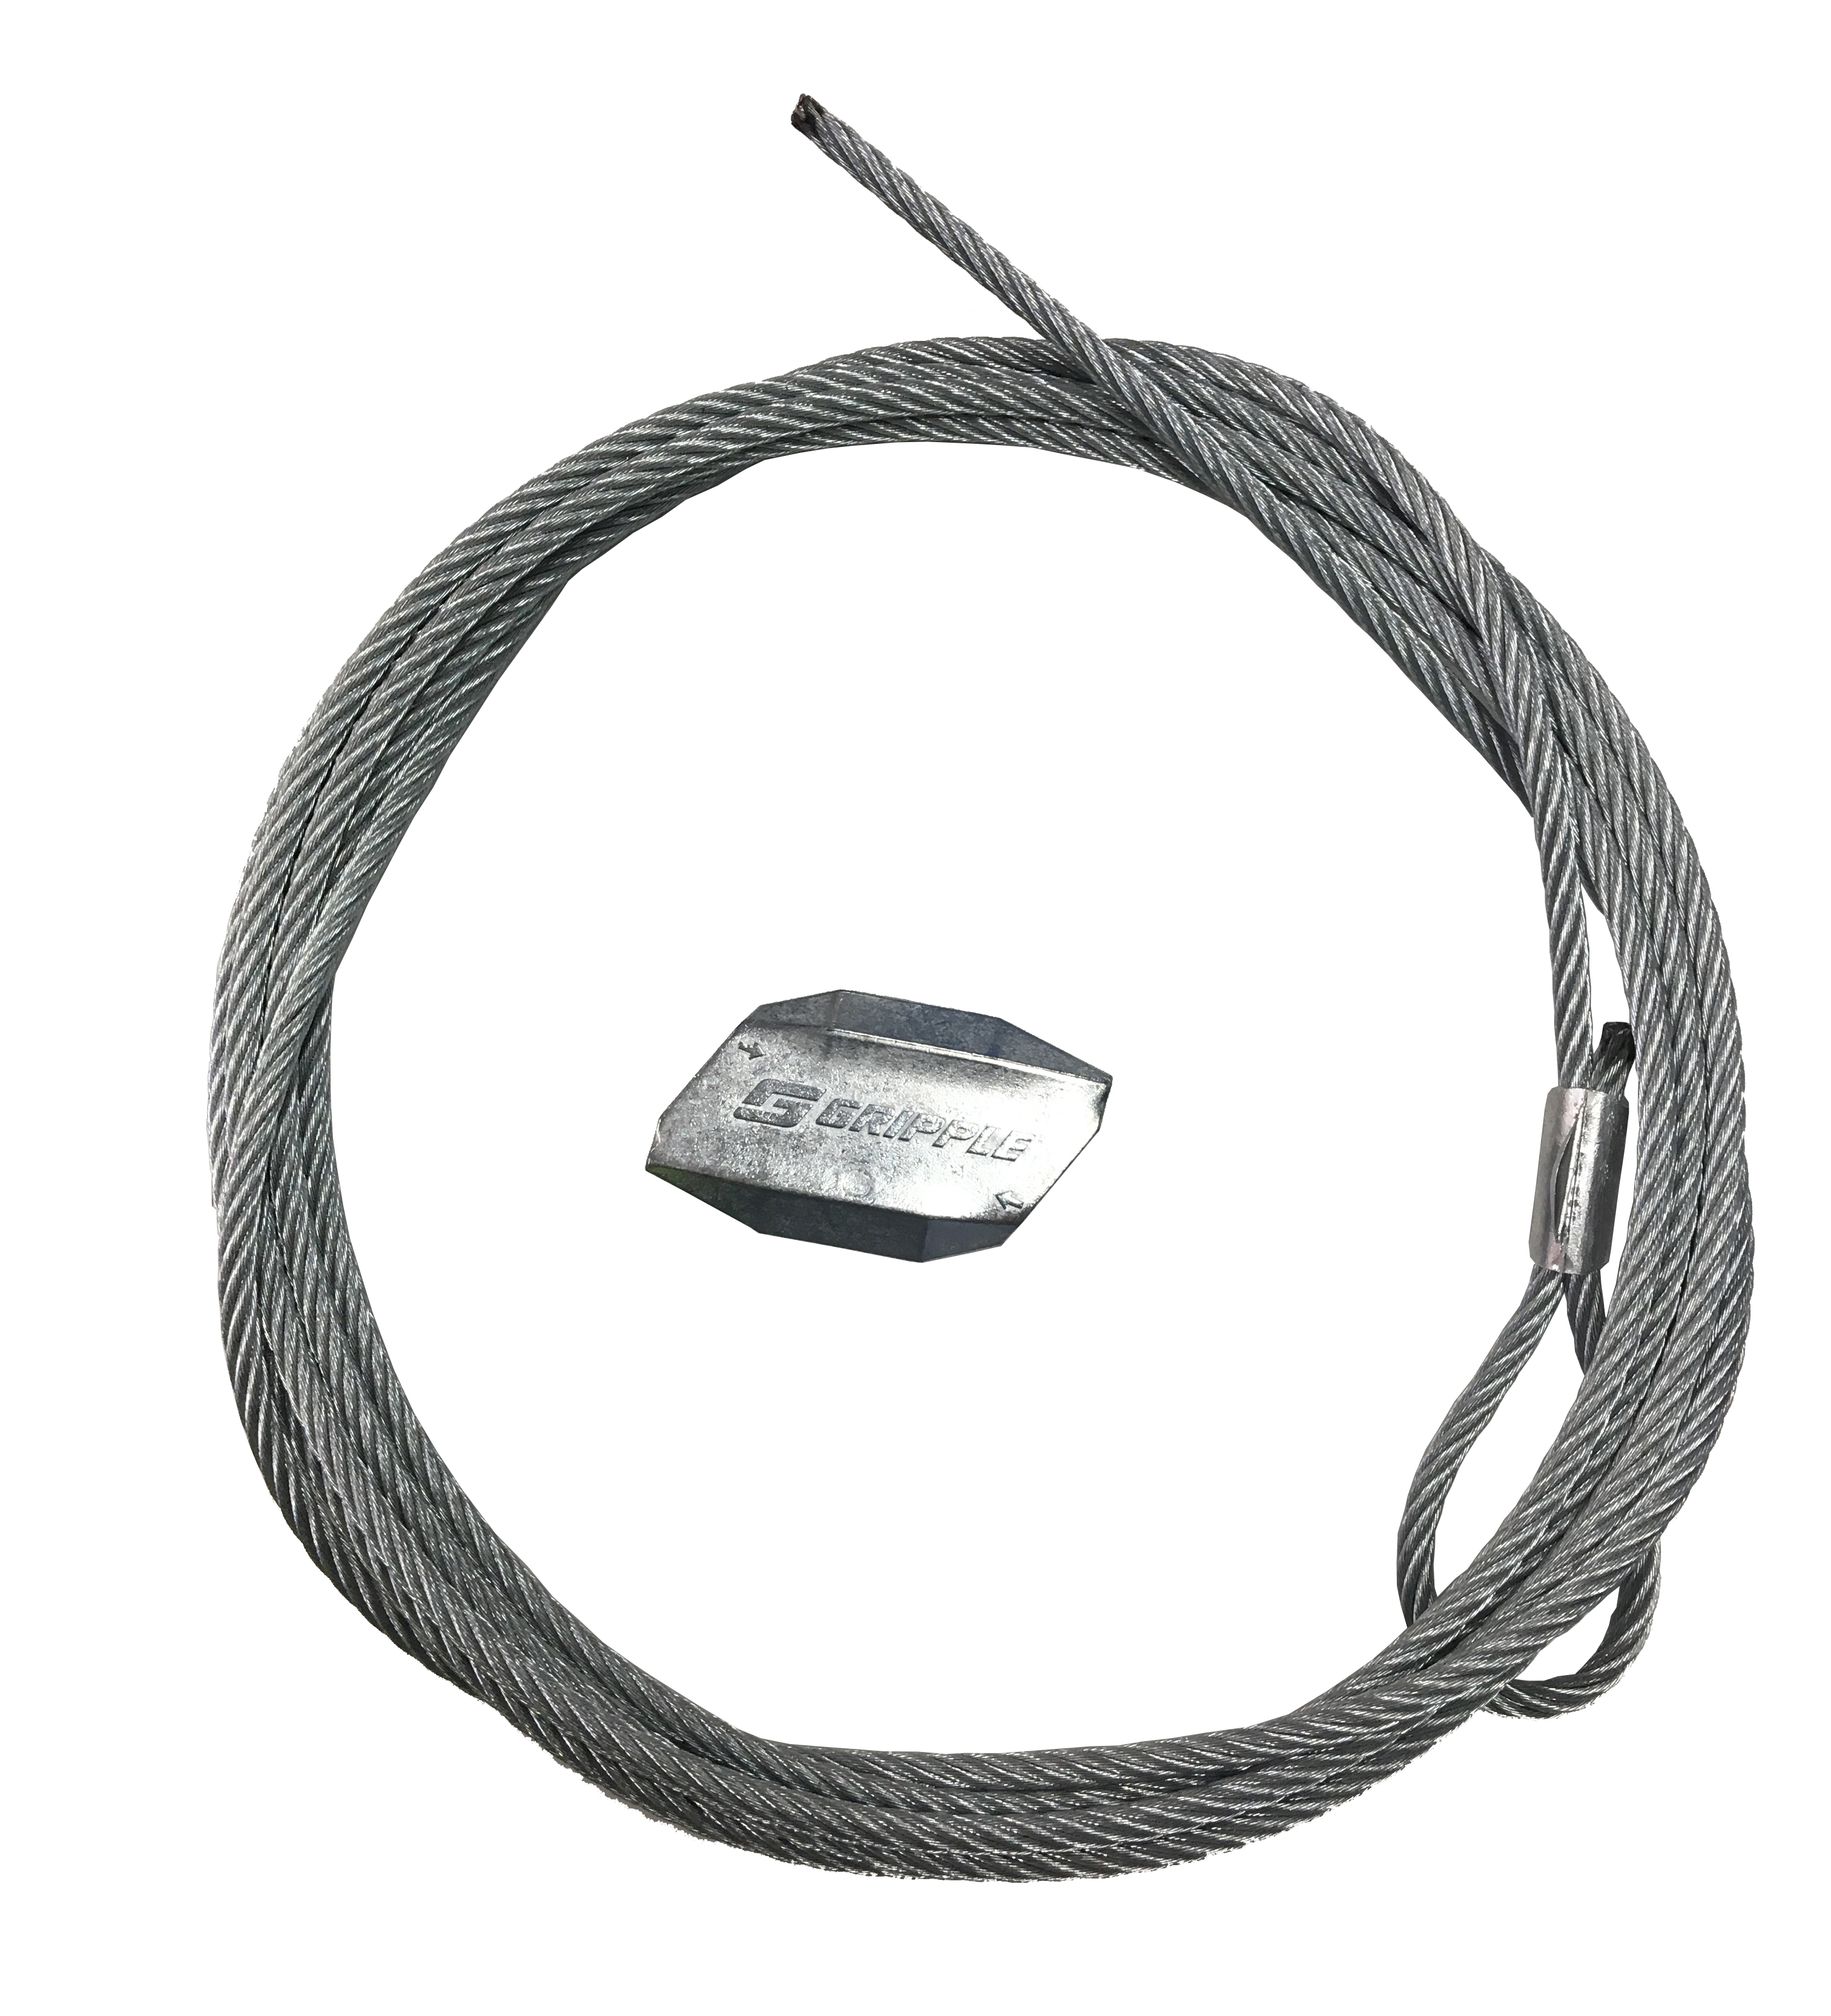 Gripple Loop Pipe/Duct Hangers - Steel Wire Suspension